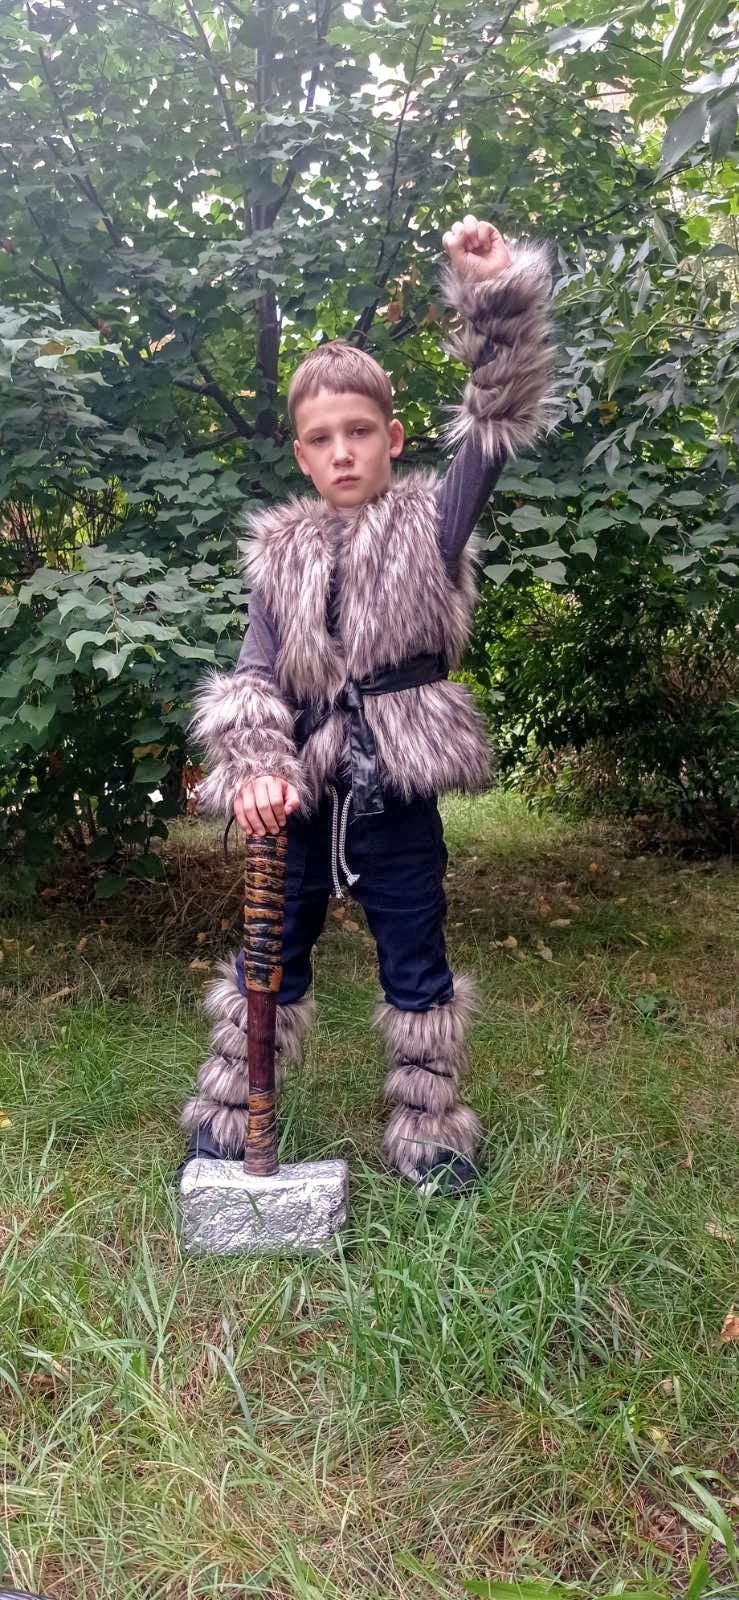 Déguisement Viking enfant - Deguiz-Fetes.